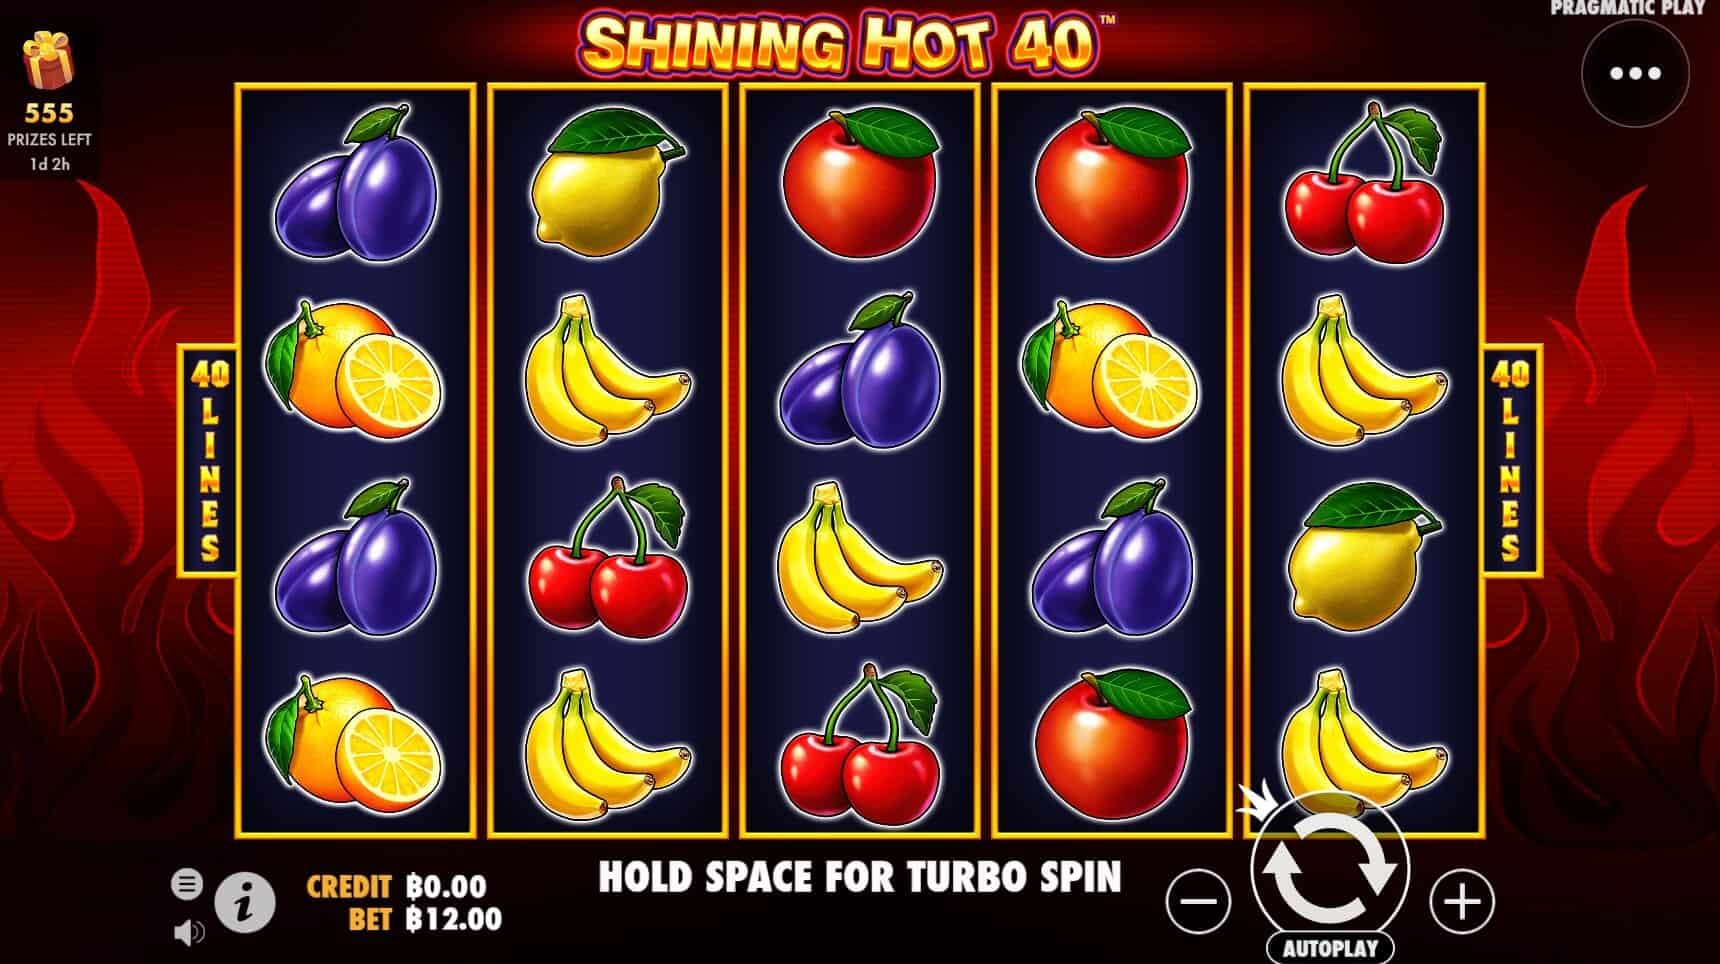 Shining Hot 40 Pragmatic Play joker slot